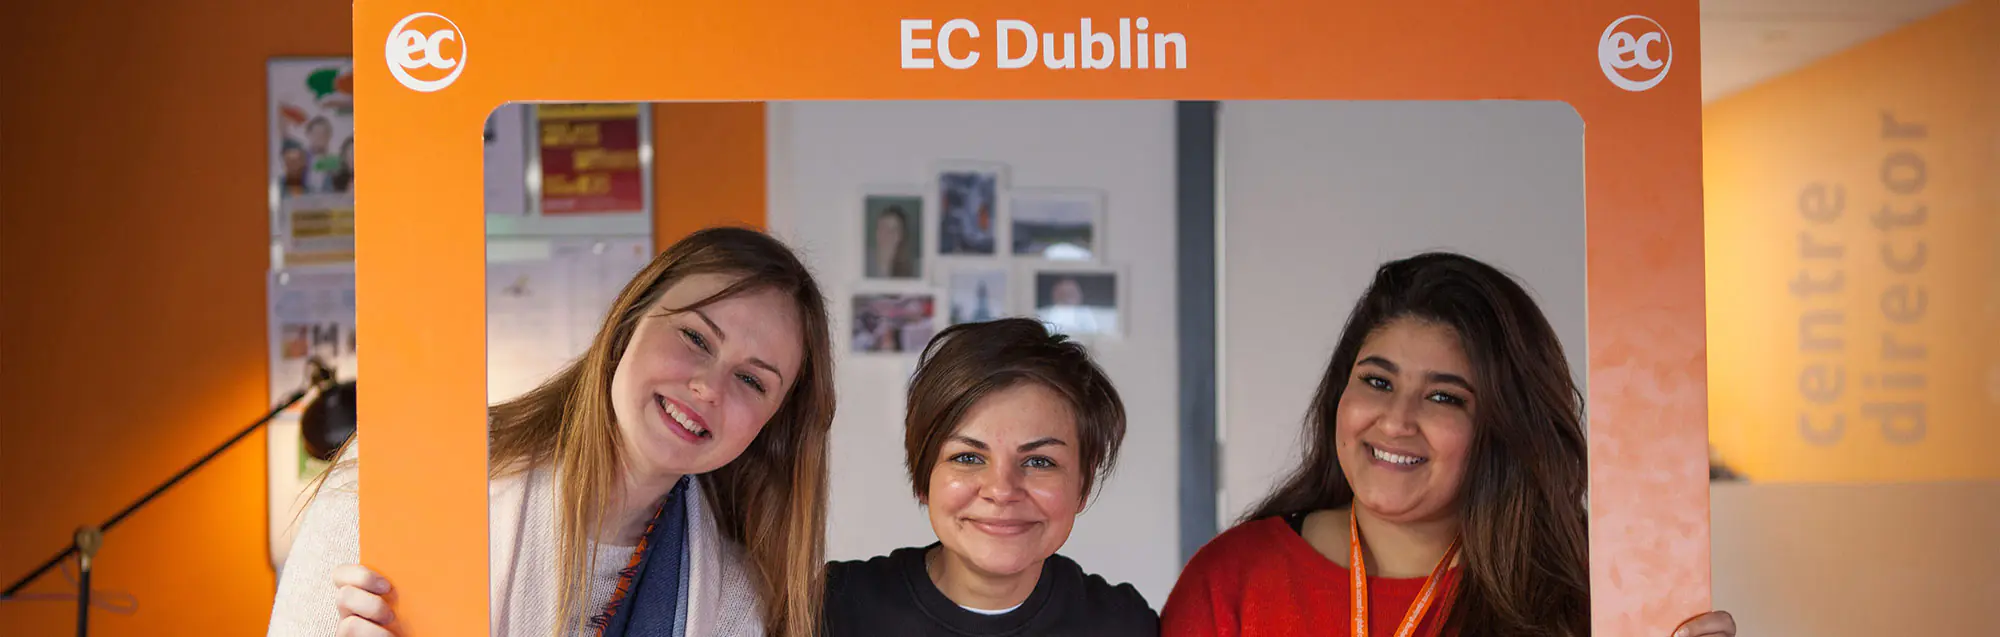 Los alojamientos de EC Dublin 30plus